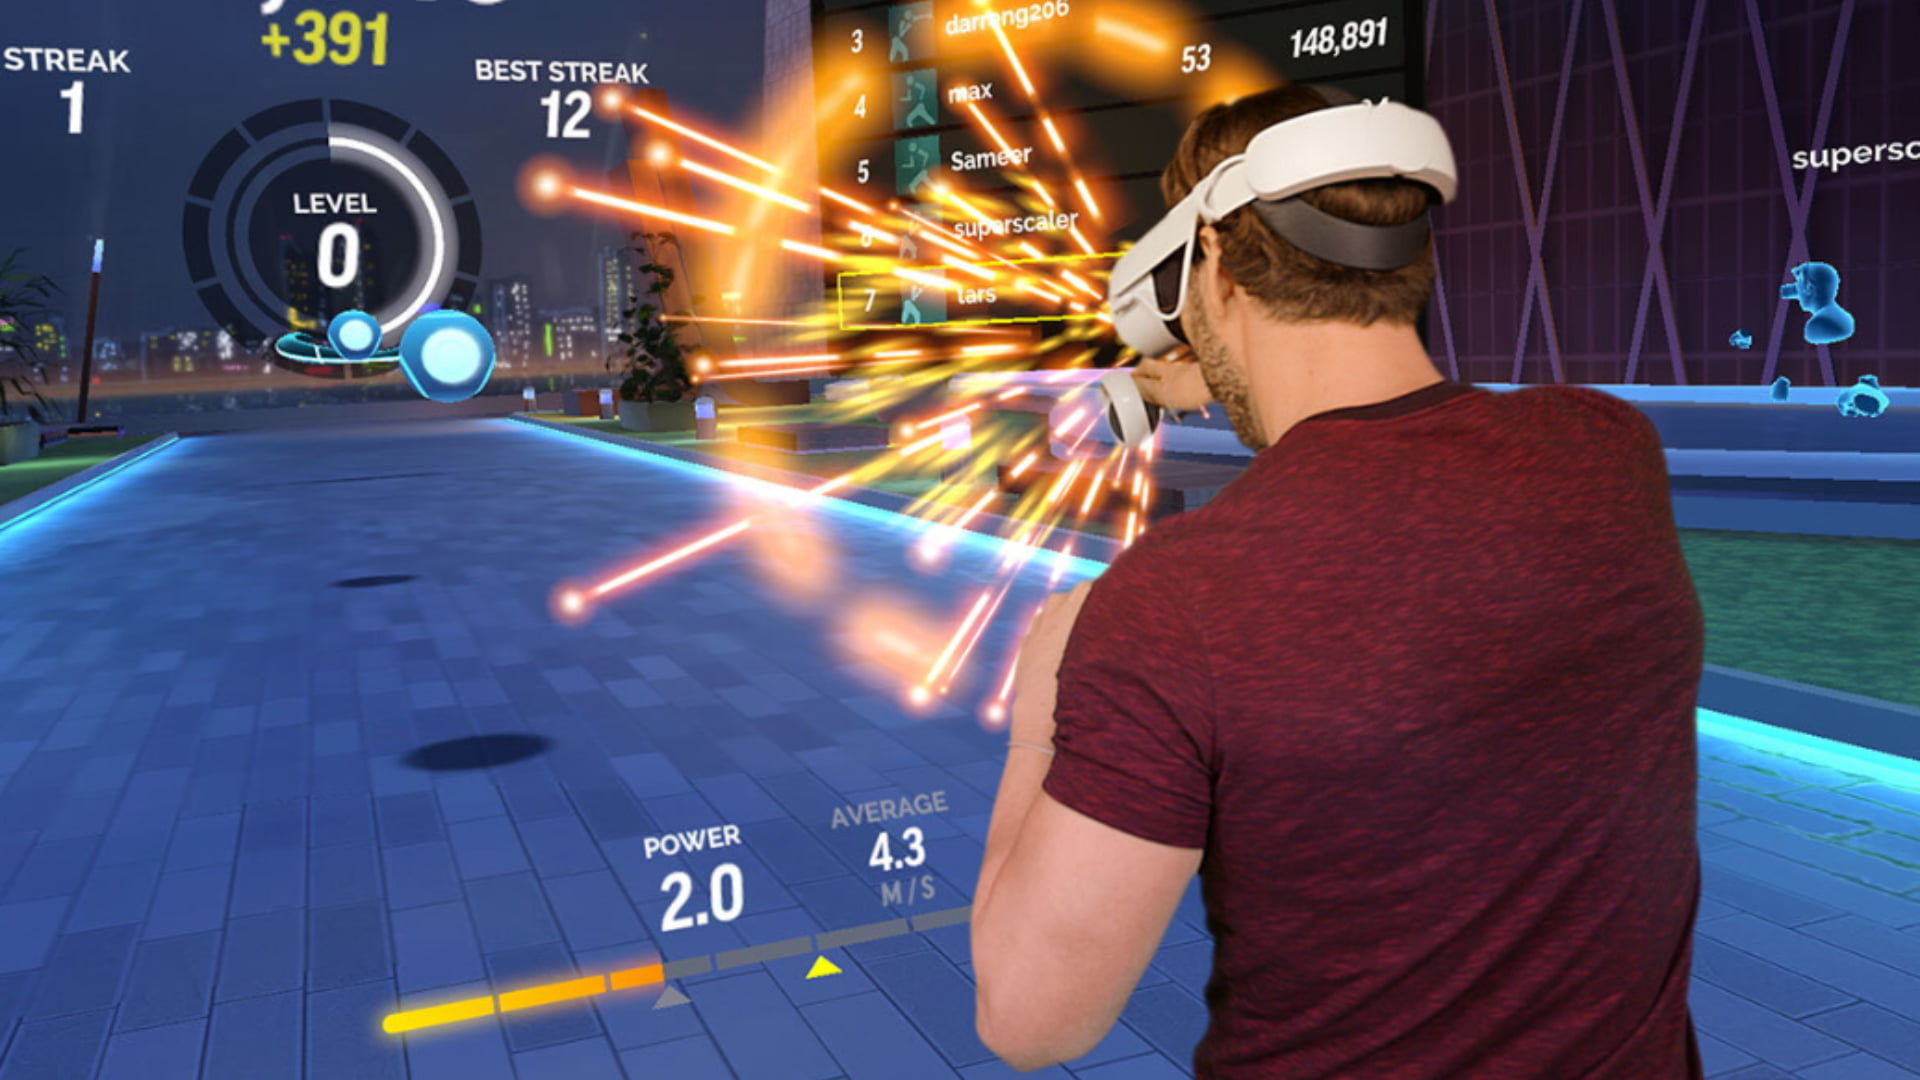 VR-Fitness-App wird gratis für Quest 1 - es gibt aber einen Haken